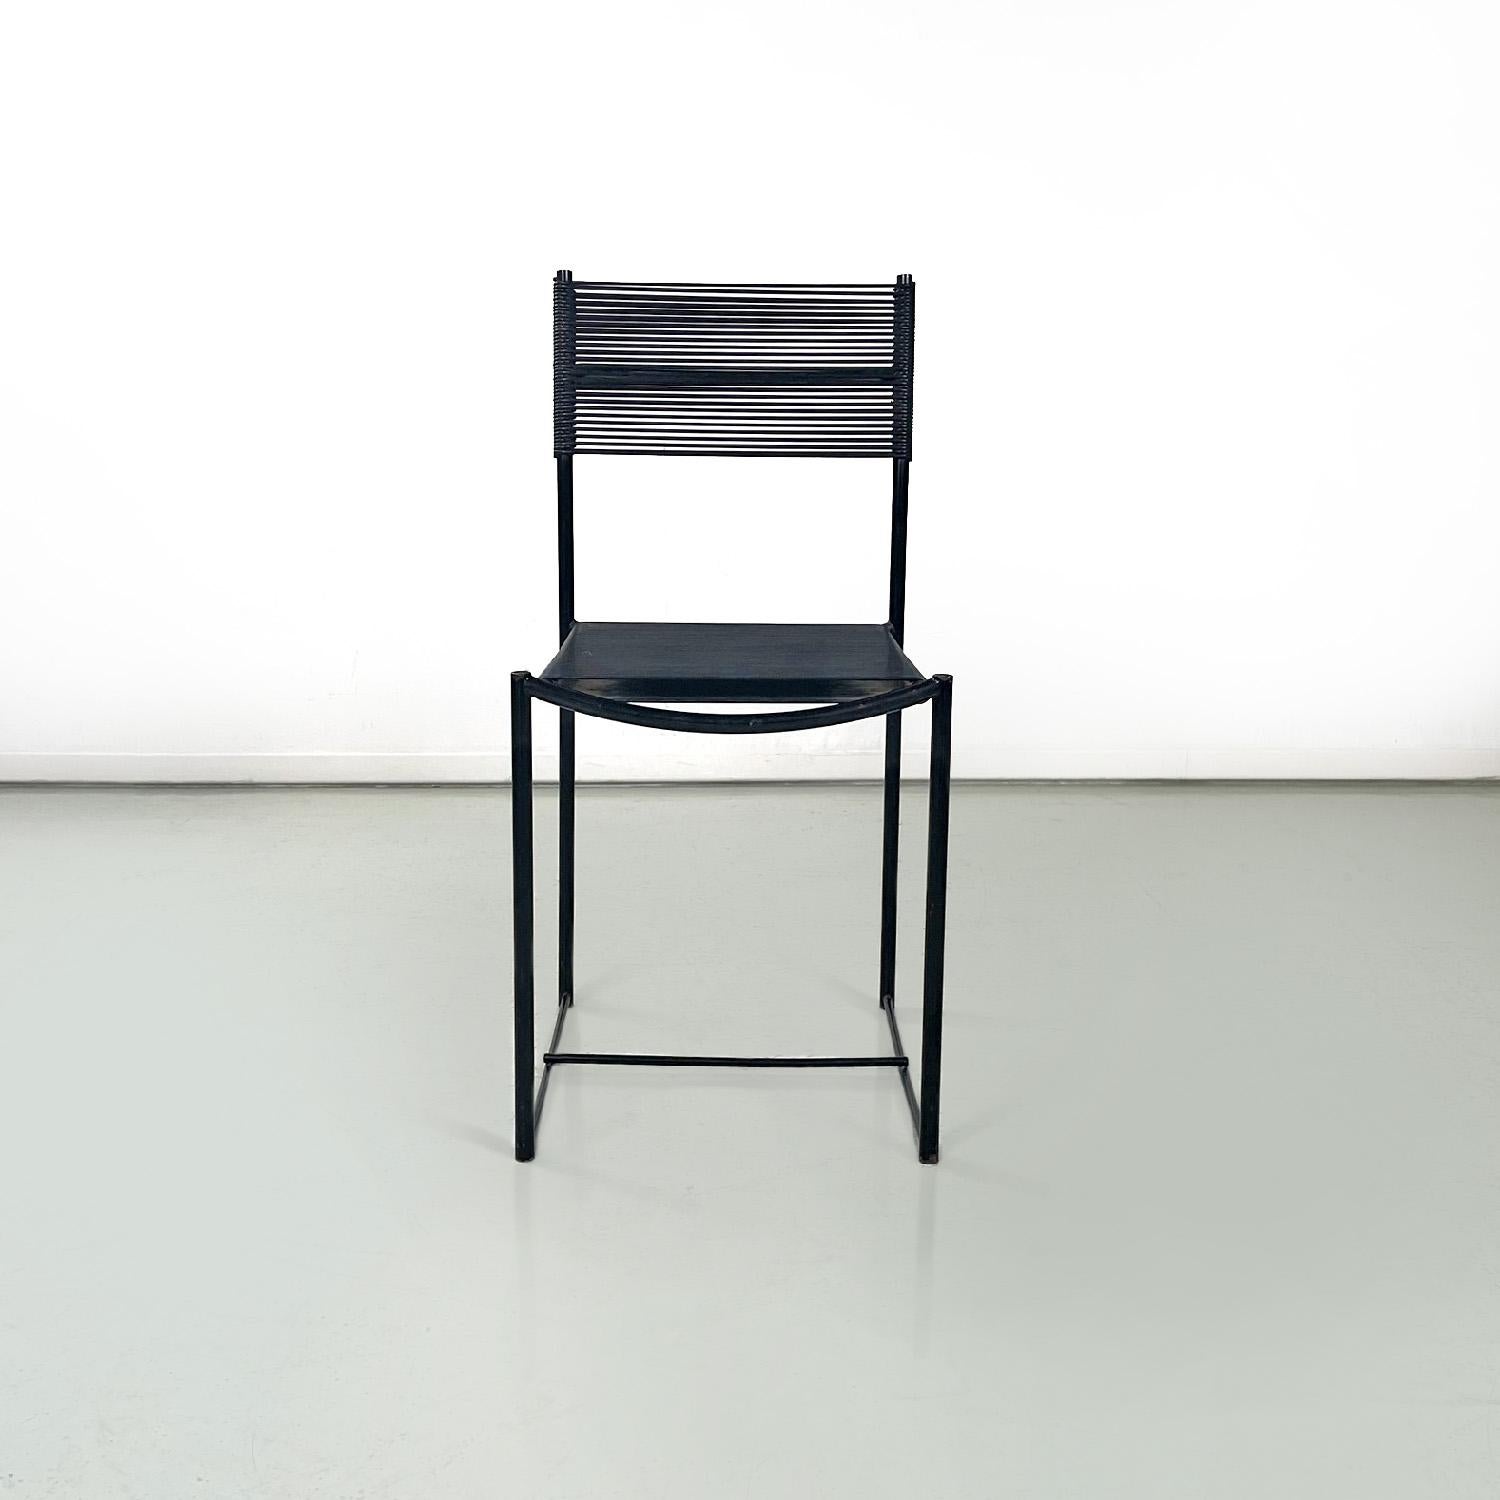 Chaises modernes italiennes Spaghetti par Giandomenico Belotti pour Alias, 1980
Ensemble de six chaises mod. Spaghetti  avec assise et dossier rectangulaires et élastiques en fils de scooby noirs. La structure est en métal peint en noir avec une